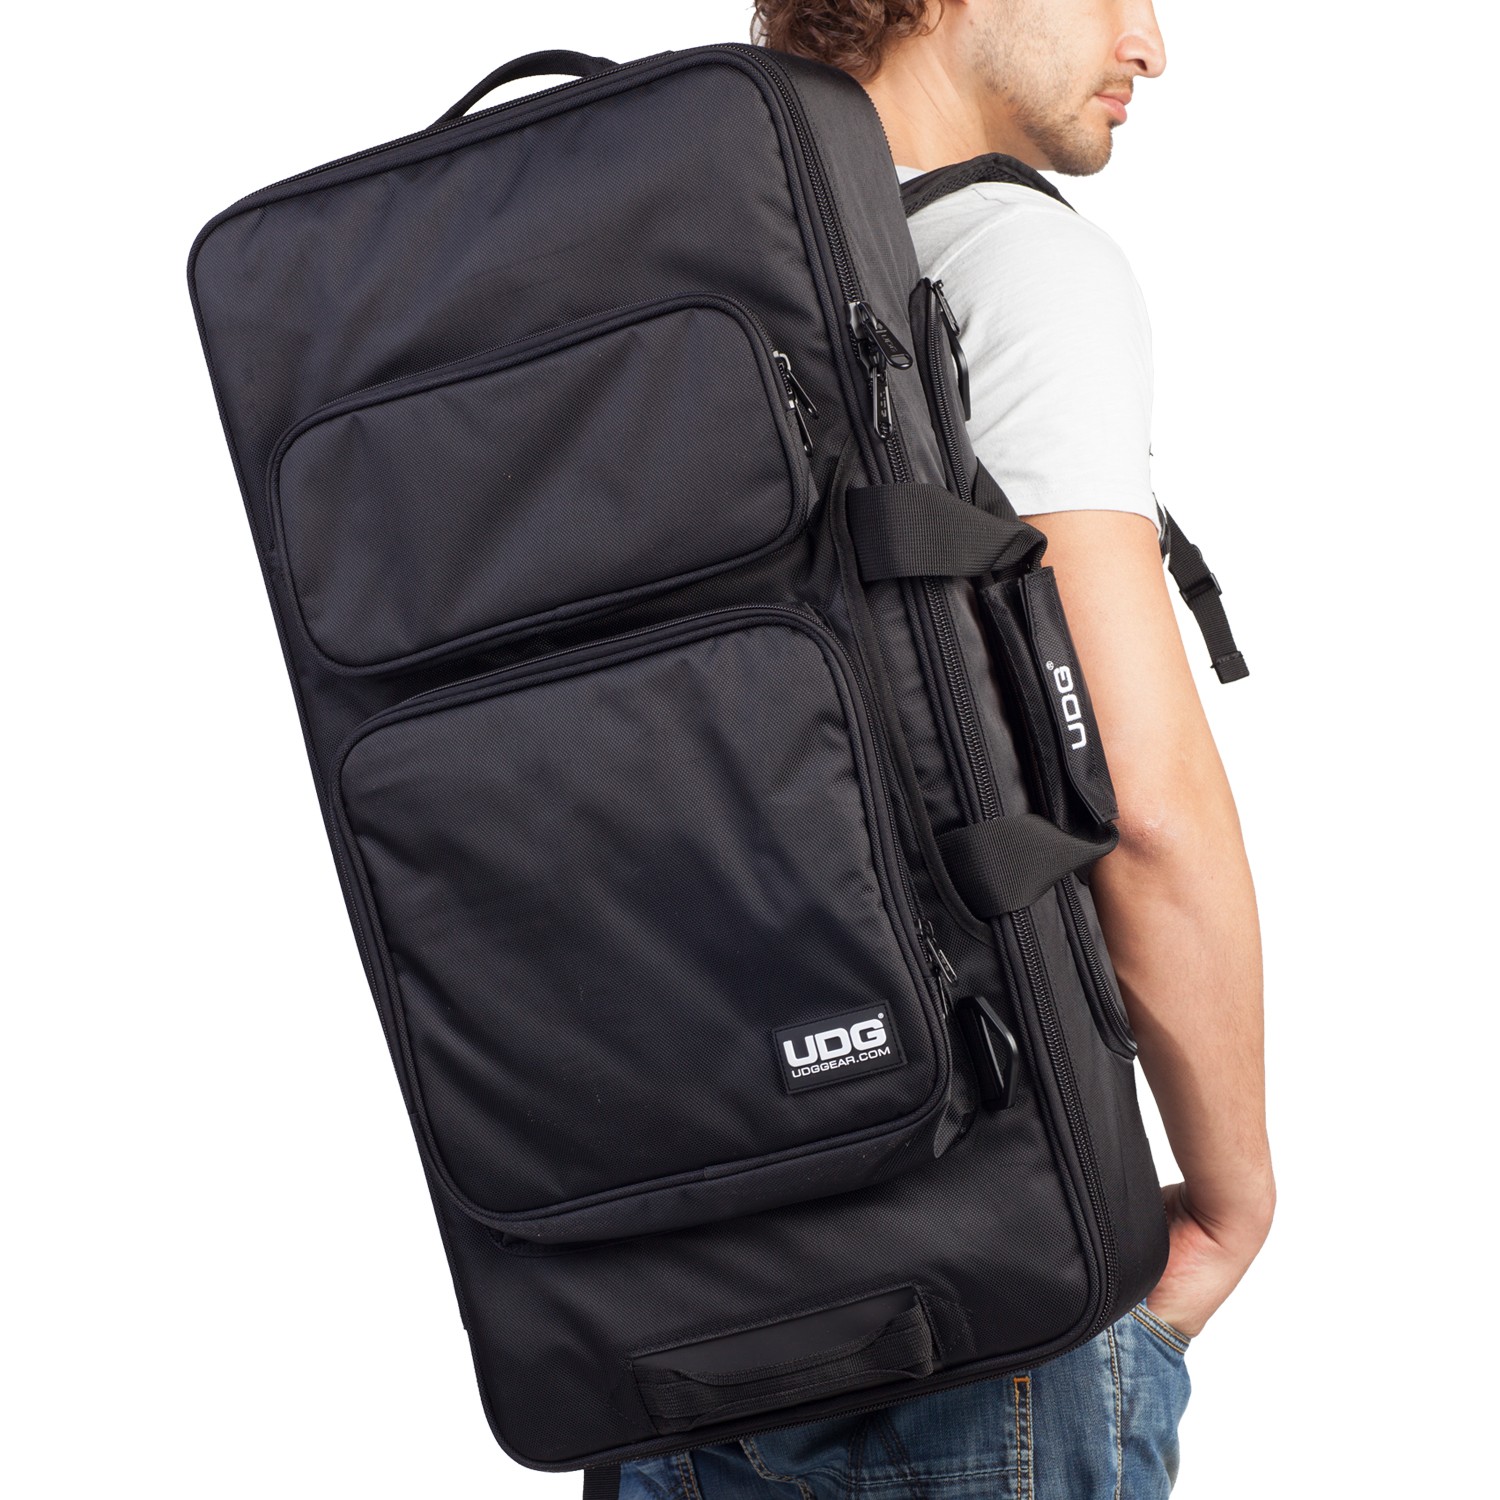 Udg Ultimate Midi Controller Backpack Large Black/orange Inside Mk2 - DJ trolley - Variation 3